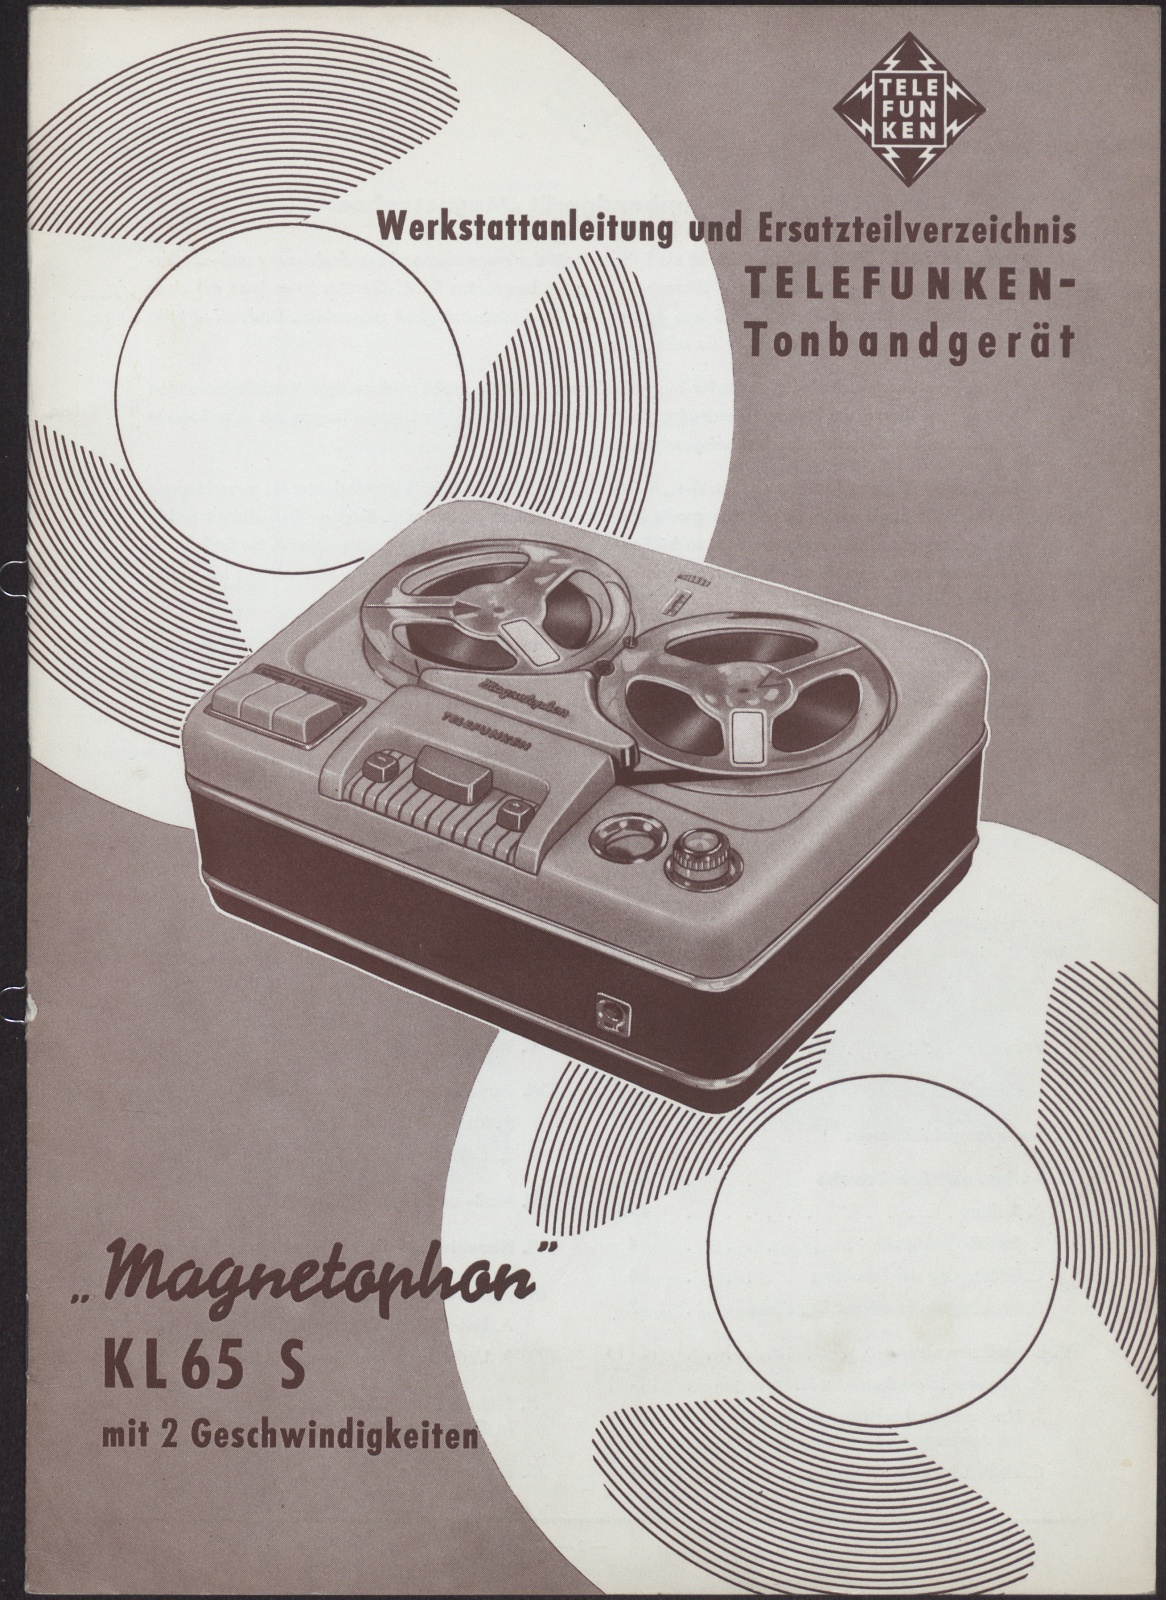 Bedienungsanleitung: Werkstattanleitung und Ersatzteilverzeichnis Telefunken Tonbandgerät Magnetophon KL65 S mit 2 Geschwindigkeiten (Stiftung Deutsches Technikmuseum Berlin CC0)